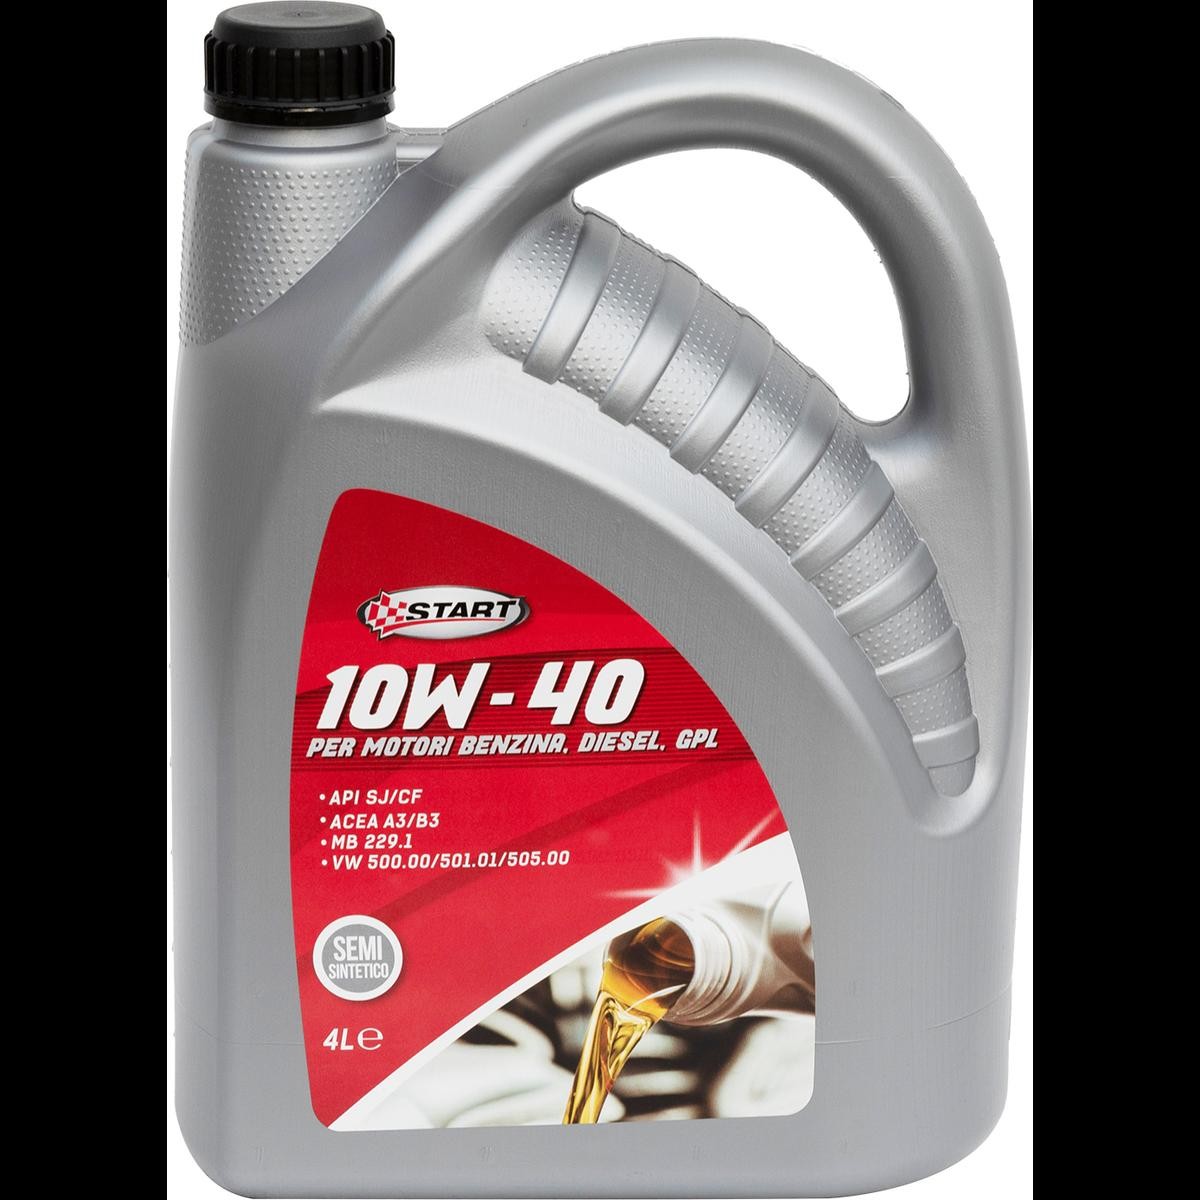 Car oil START 10W-40, 4l longlife 7911